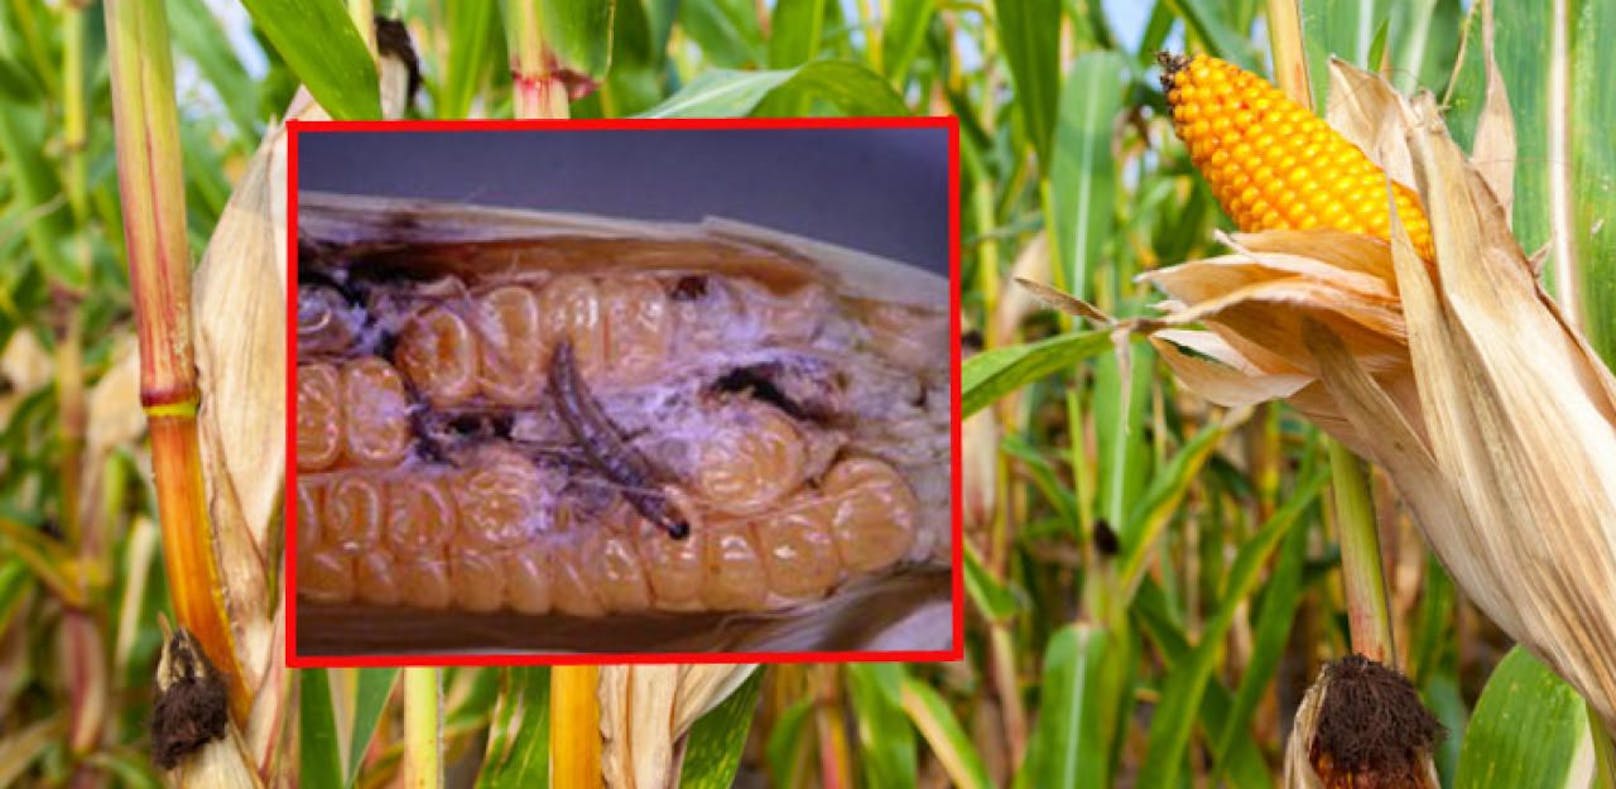 Bauern in Angst: Gift-Insekt bedroht Ernte